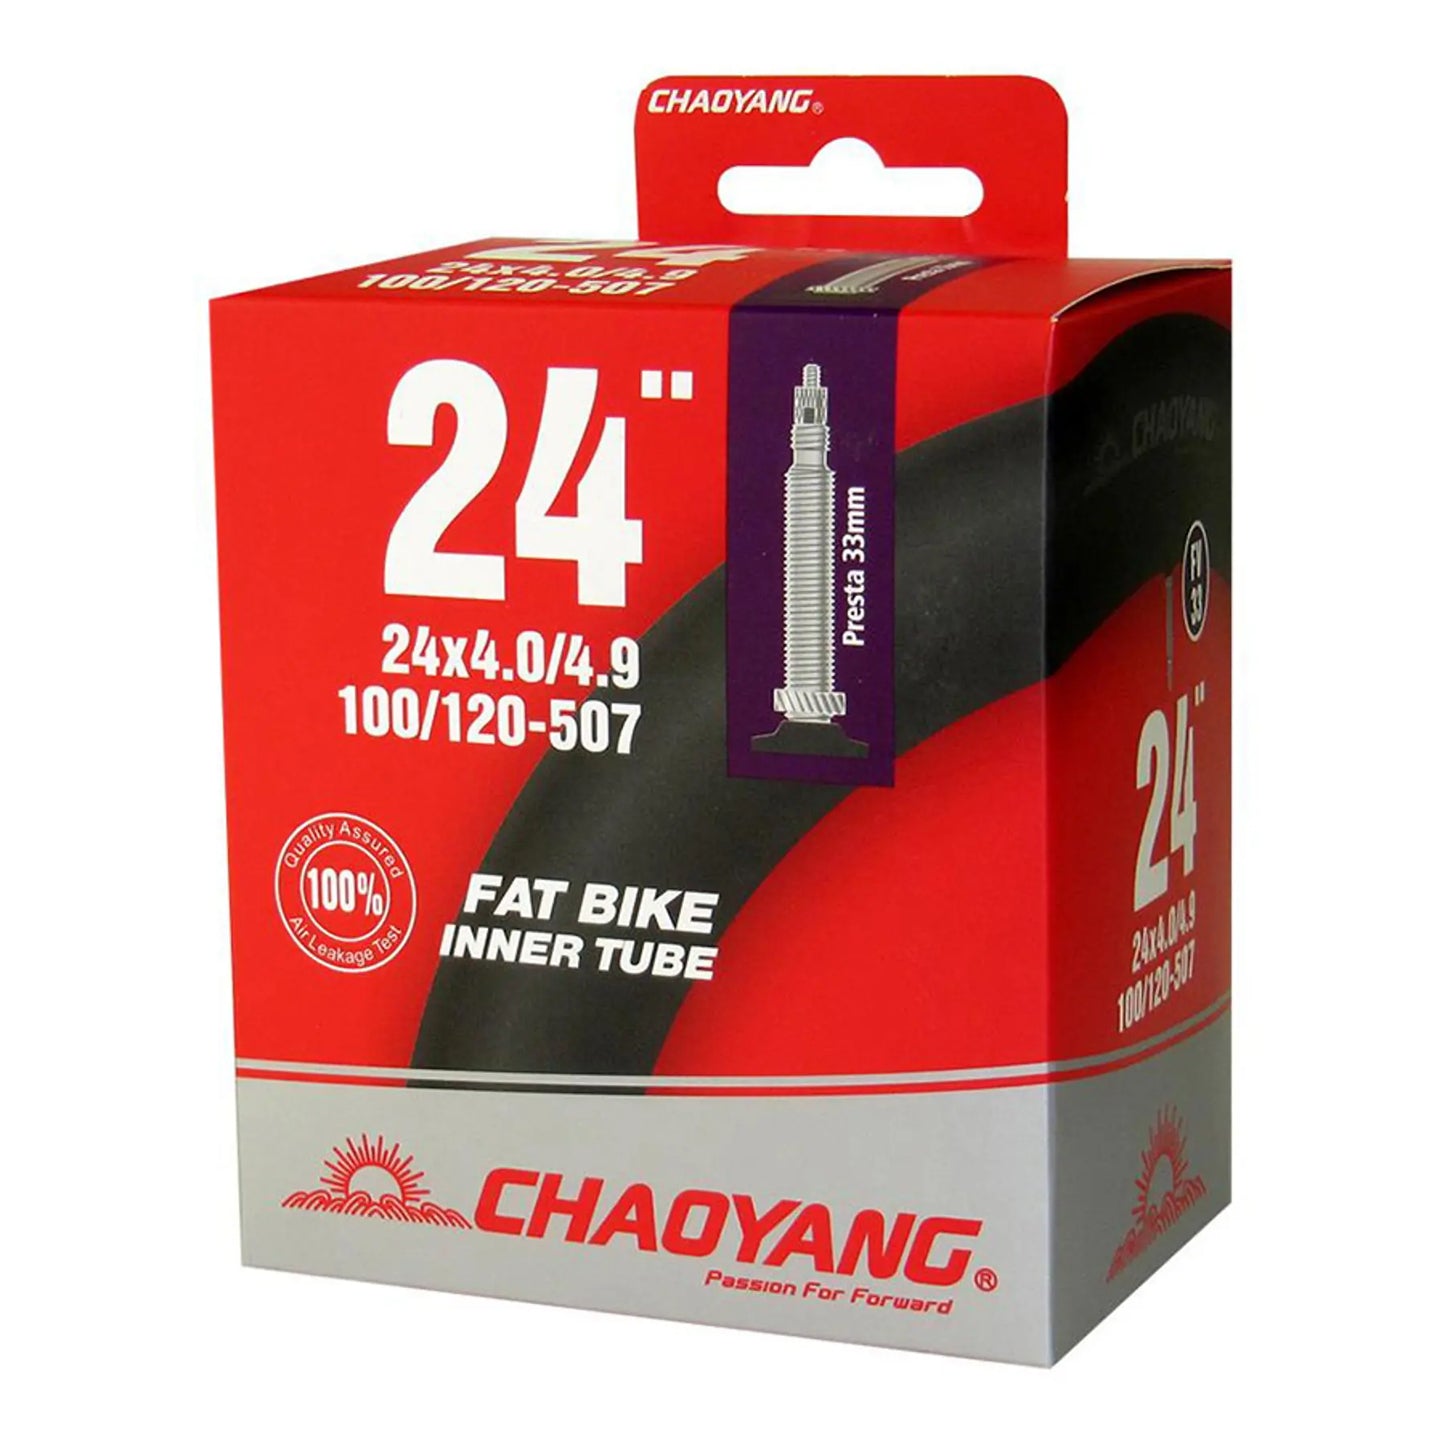 Camara Chaoyang Fat Bike 24x4,0